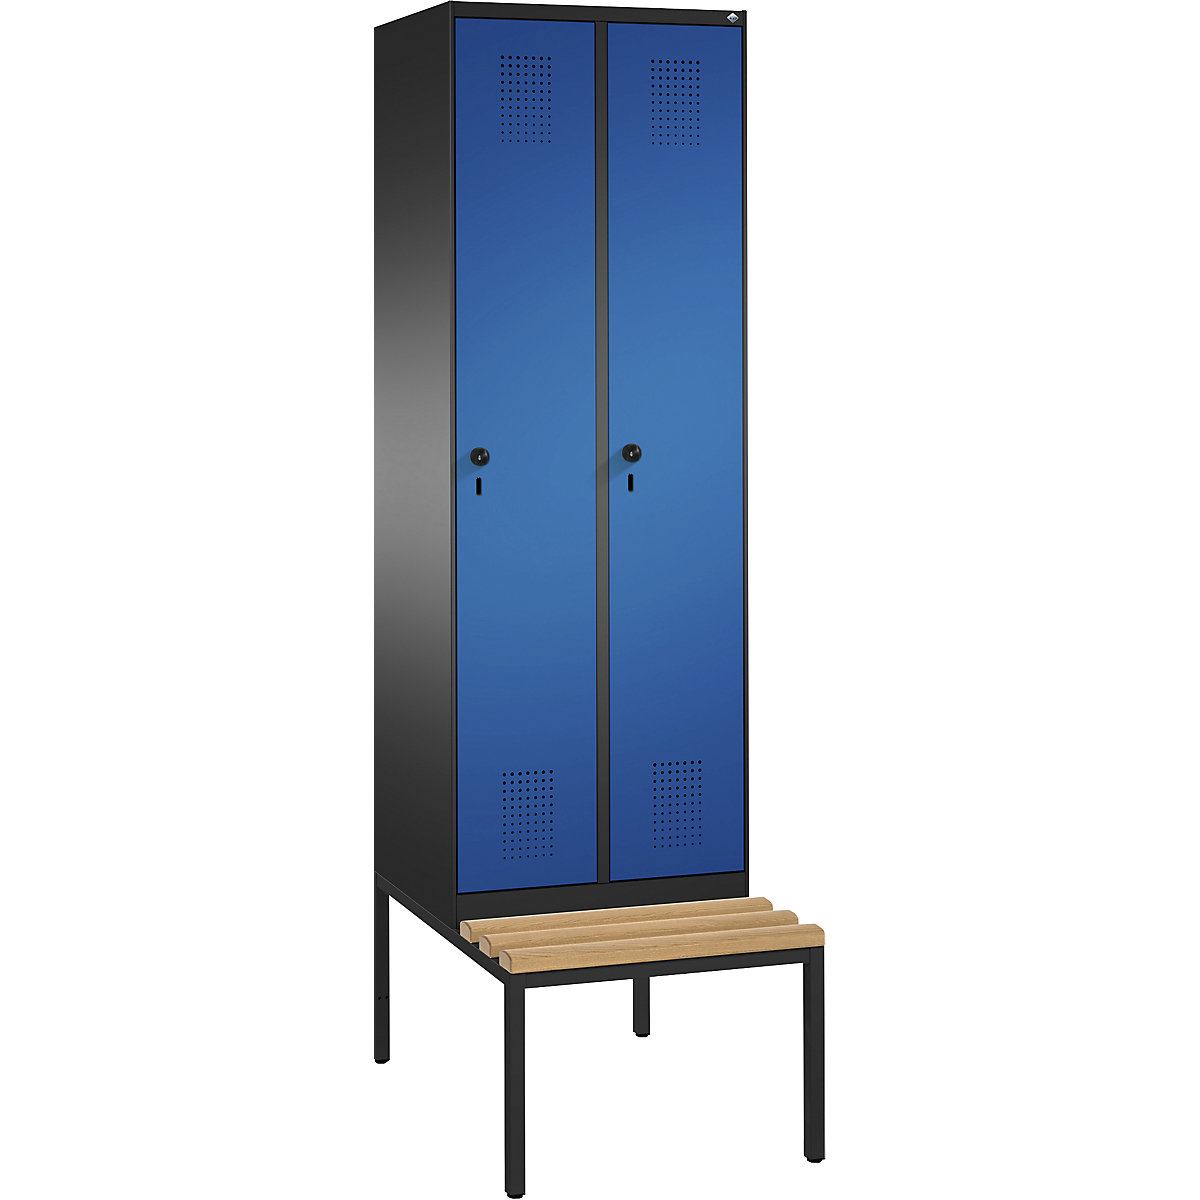 Garderobna omara EVOLO, s klopjo – C+P, 2 razdelka, širina razdelka 300 mm, črno siva / encijan modra-2